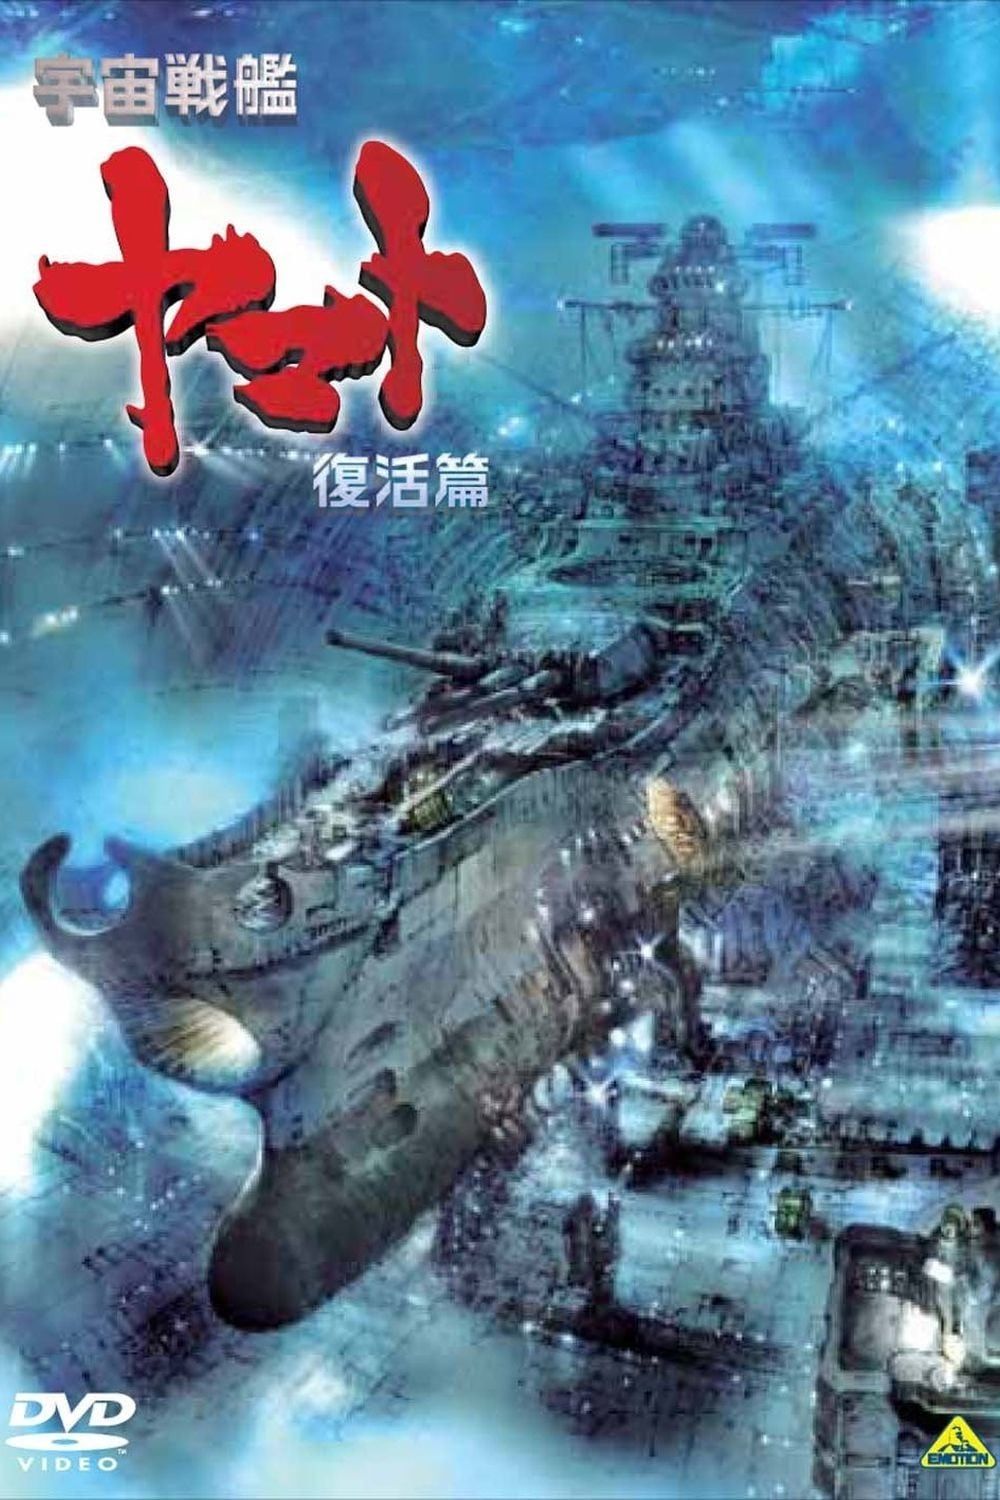 [Action] Uchuu Senkan Yamato: Fukkatsu-hen (Movie) (Sub) Seasson 4